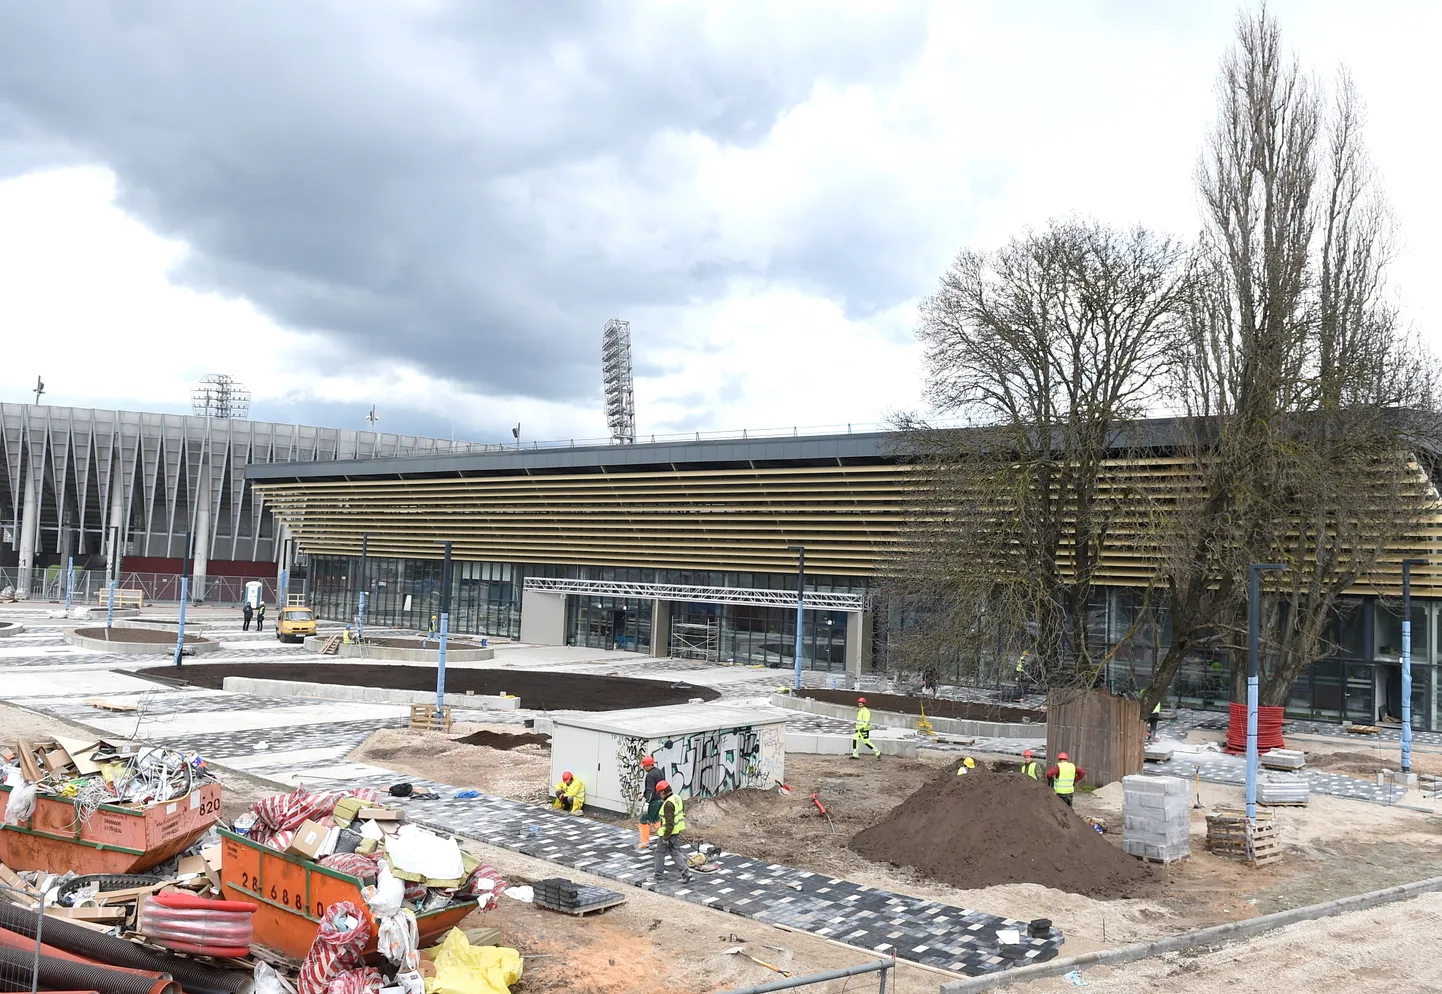 Tiek būvēta Daugavas stadiona ledus halle, kurā atradīsies divi hokeja laukumi, kas paredzēti 2021.gada pasaules čempionātam hokejā.